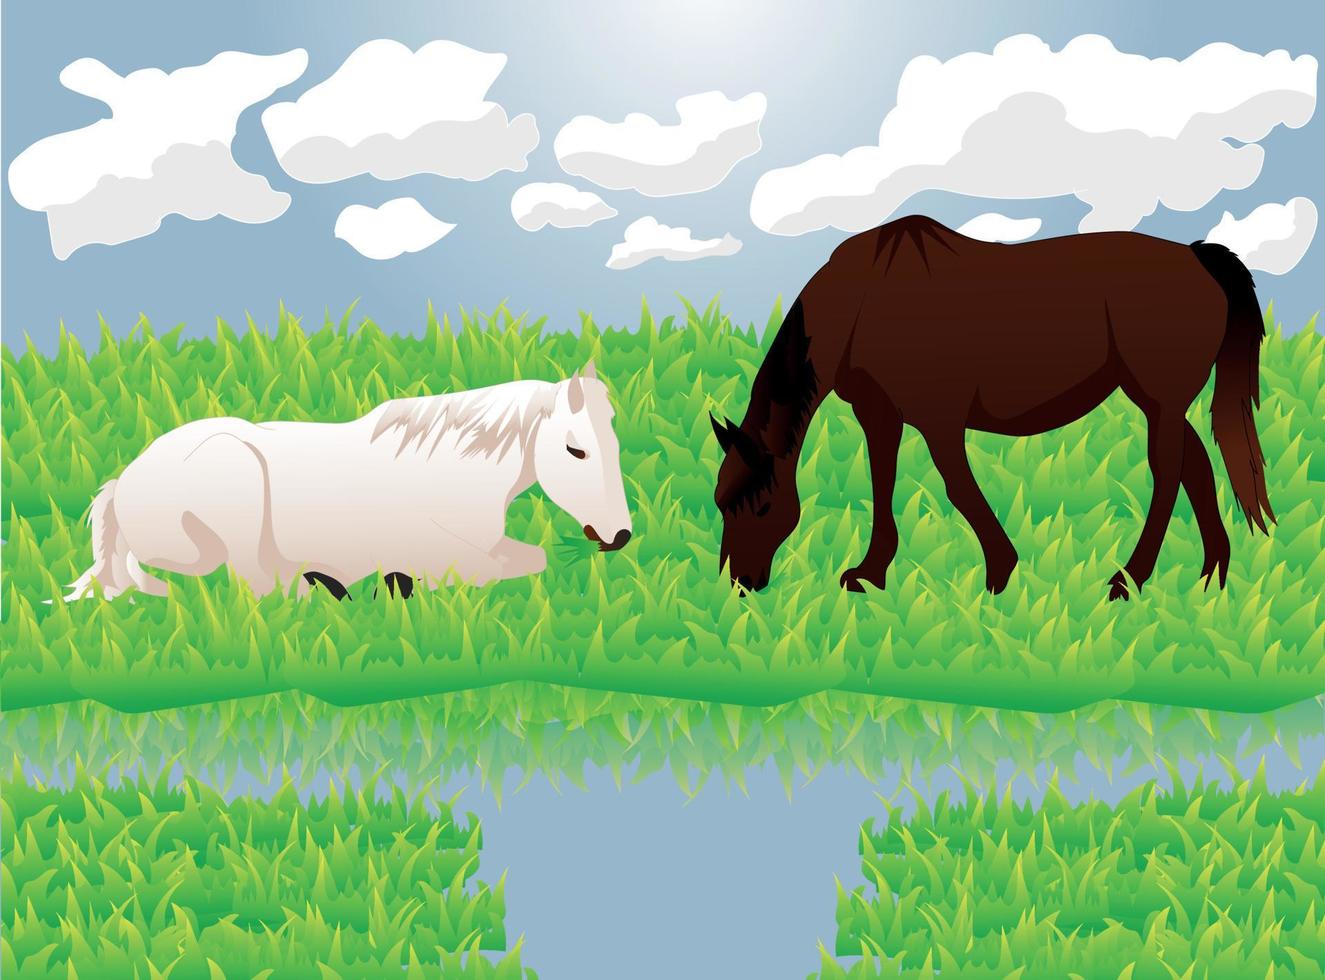 cavalos em pastagens comendo grama, ilustração vetorial vetor